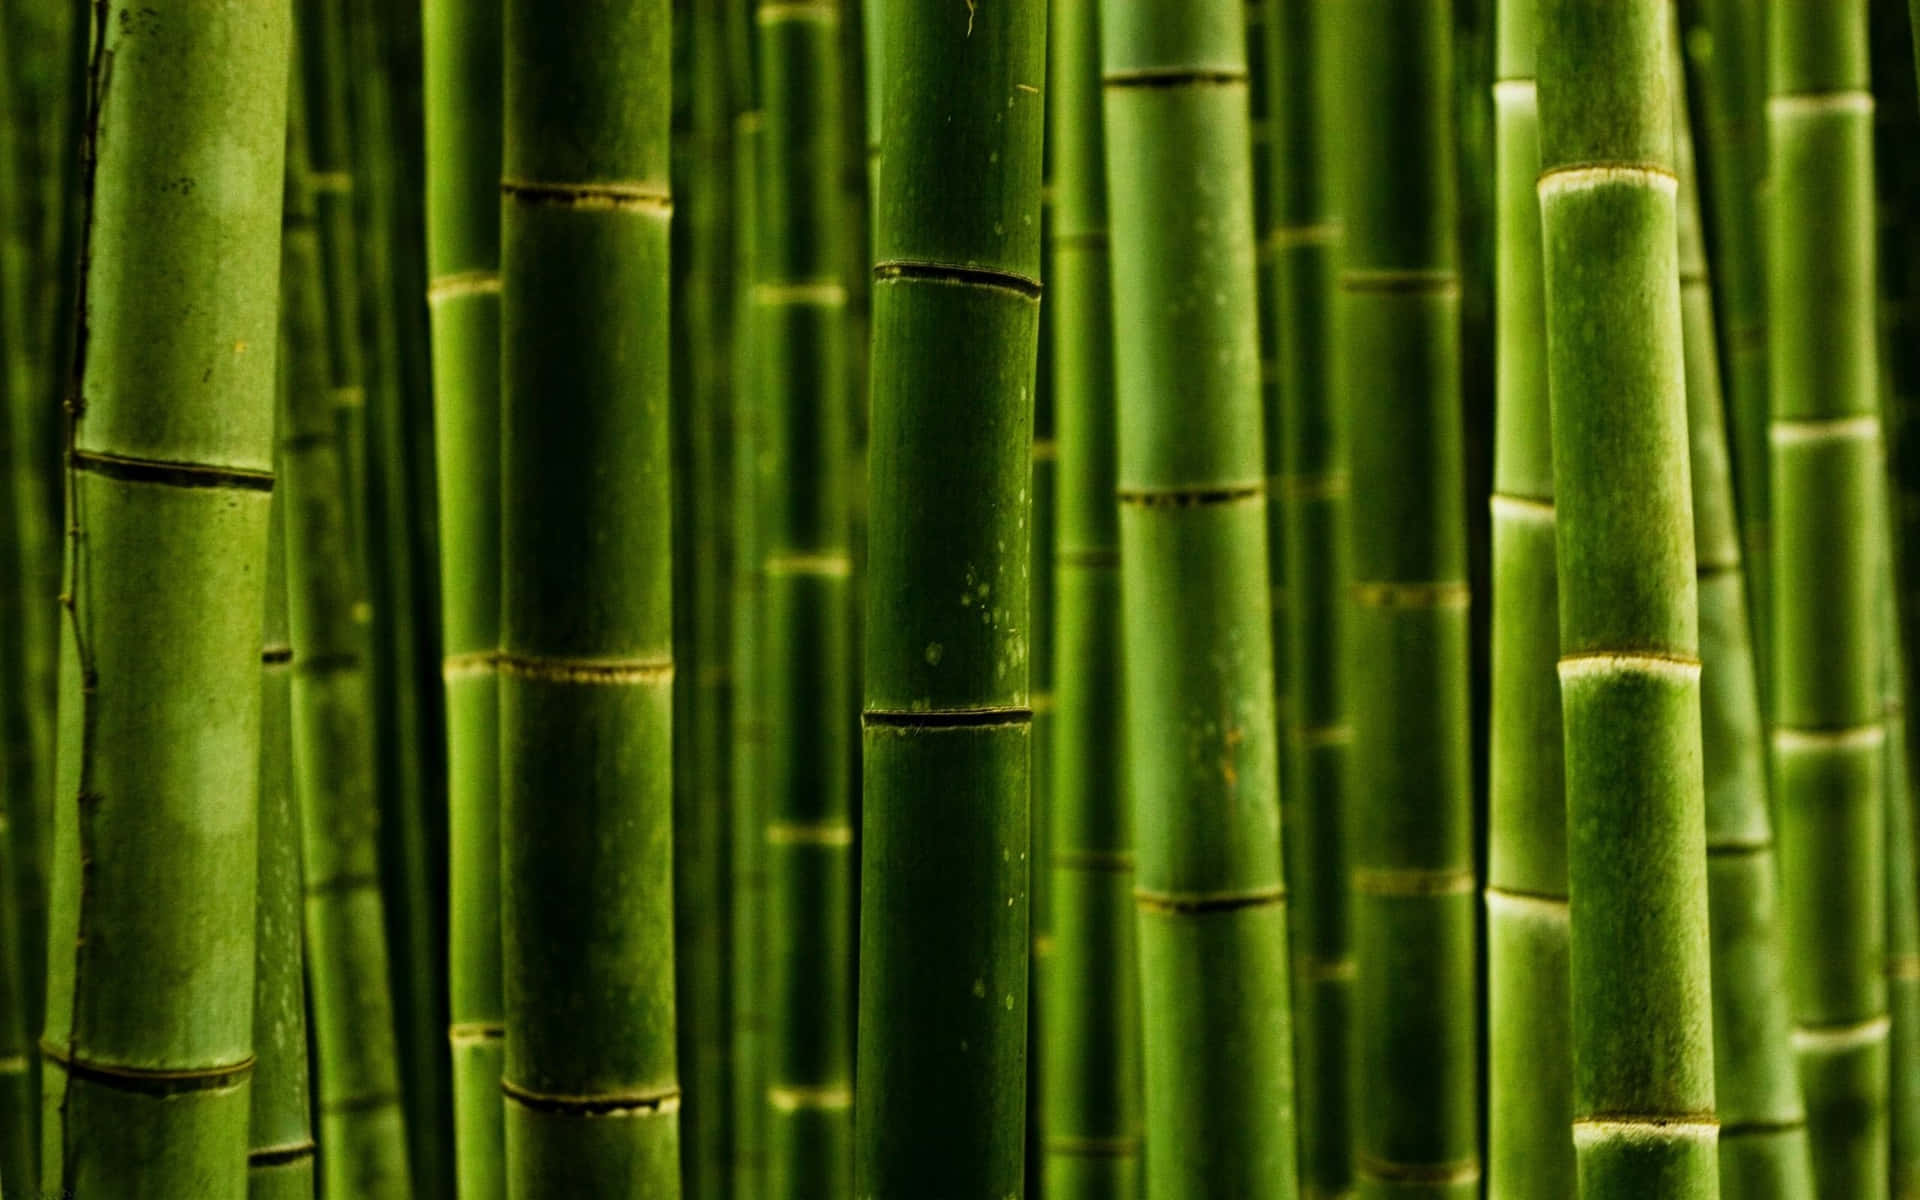 Etfredfyldt Udendørs Miljø Med Frodige Grønne Bambustræer.